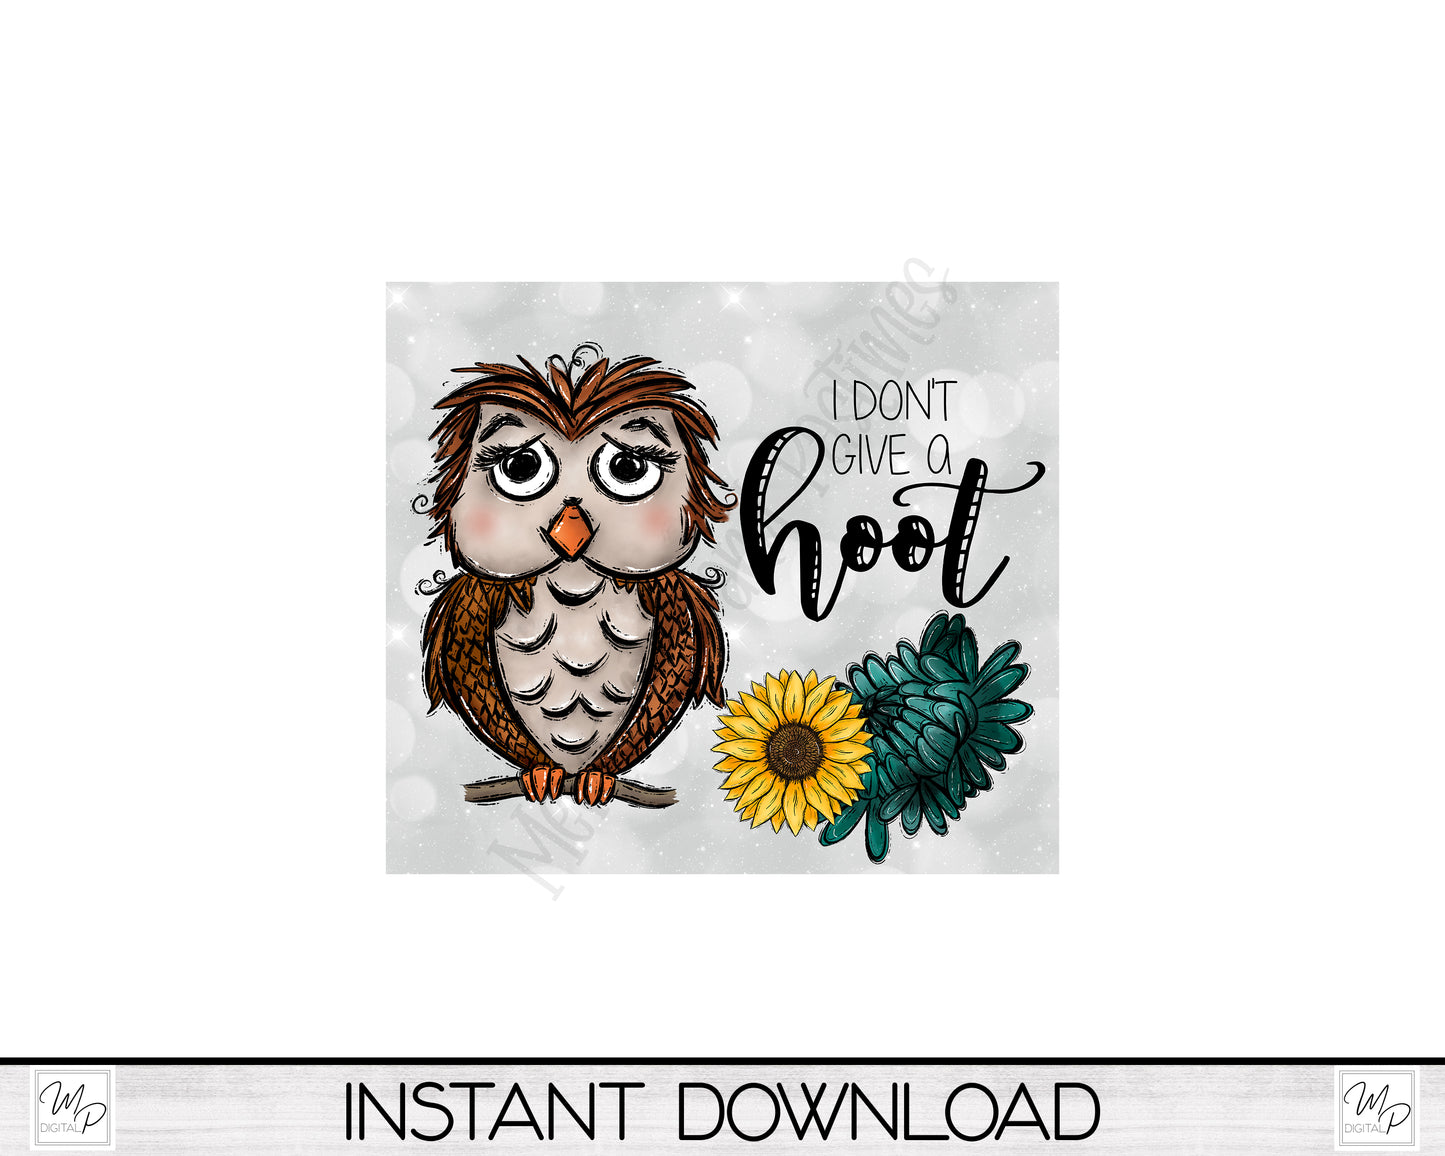 Owl 20oz Skinny Tumbler PNG Sublimation Design, Digital Download